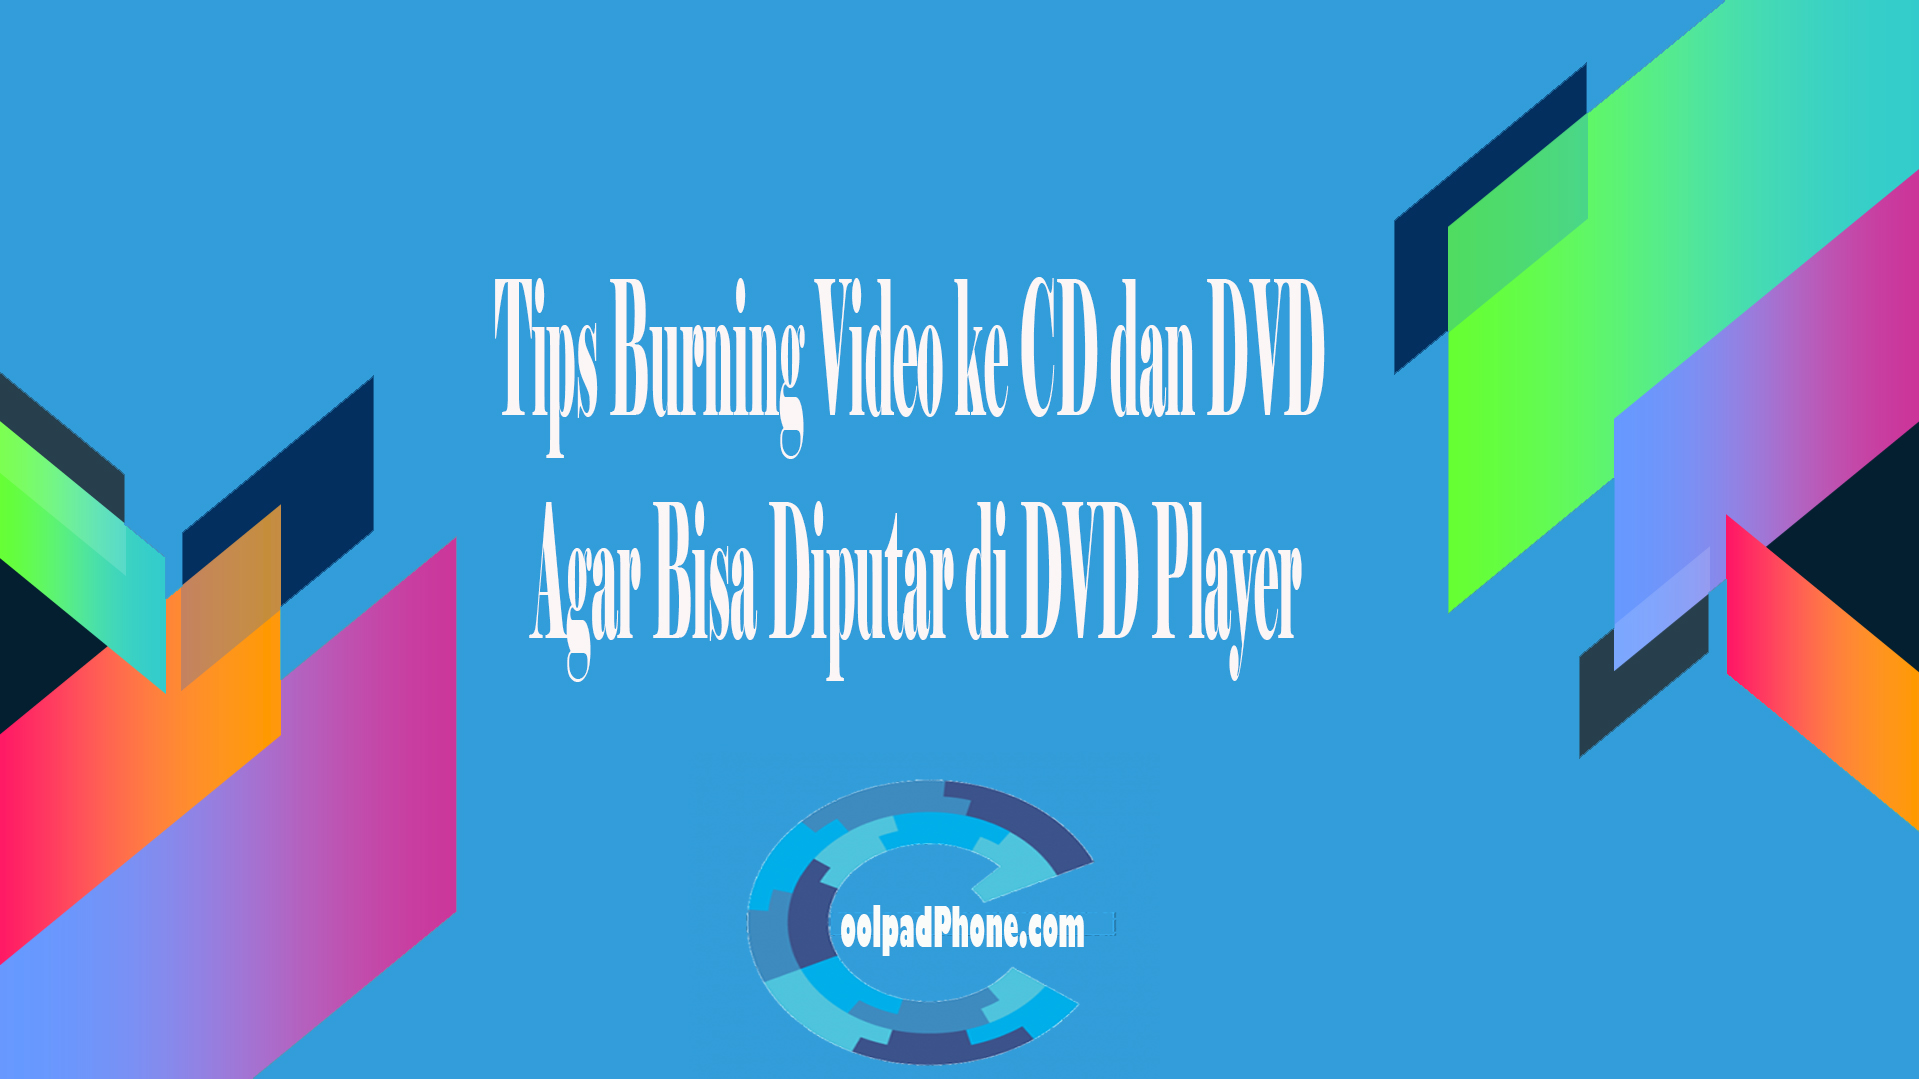 Tips Burning Video ke CD dan DVD Agar Bisa Diputar di DVD Player